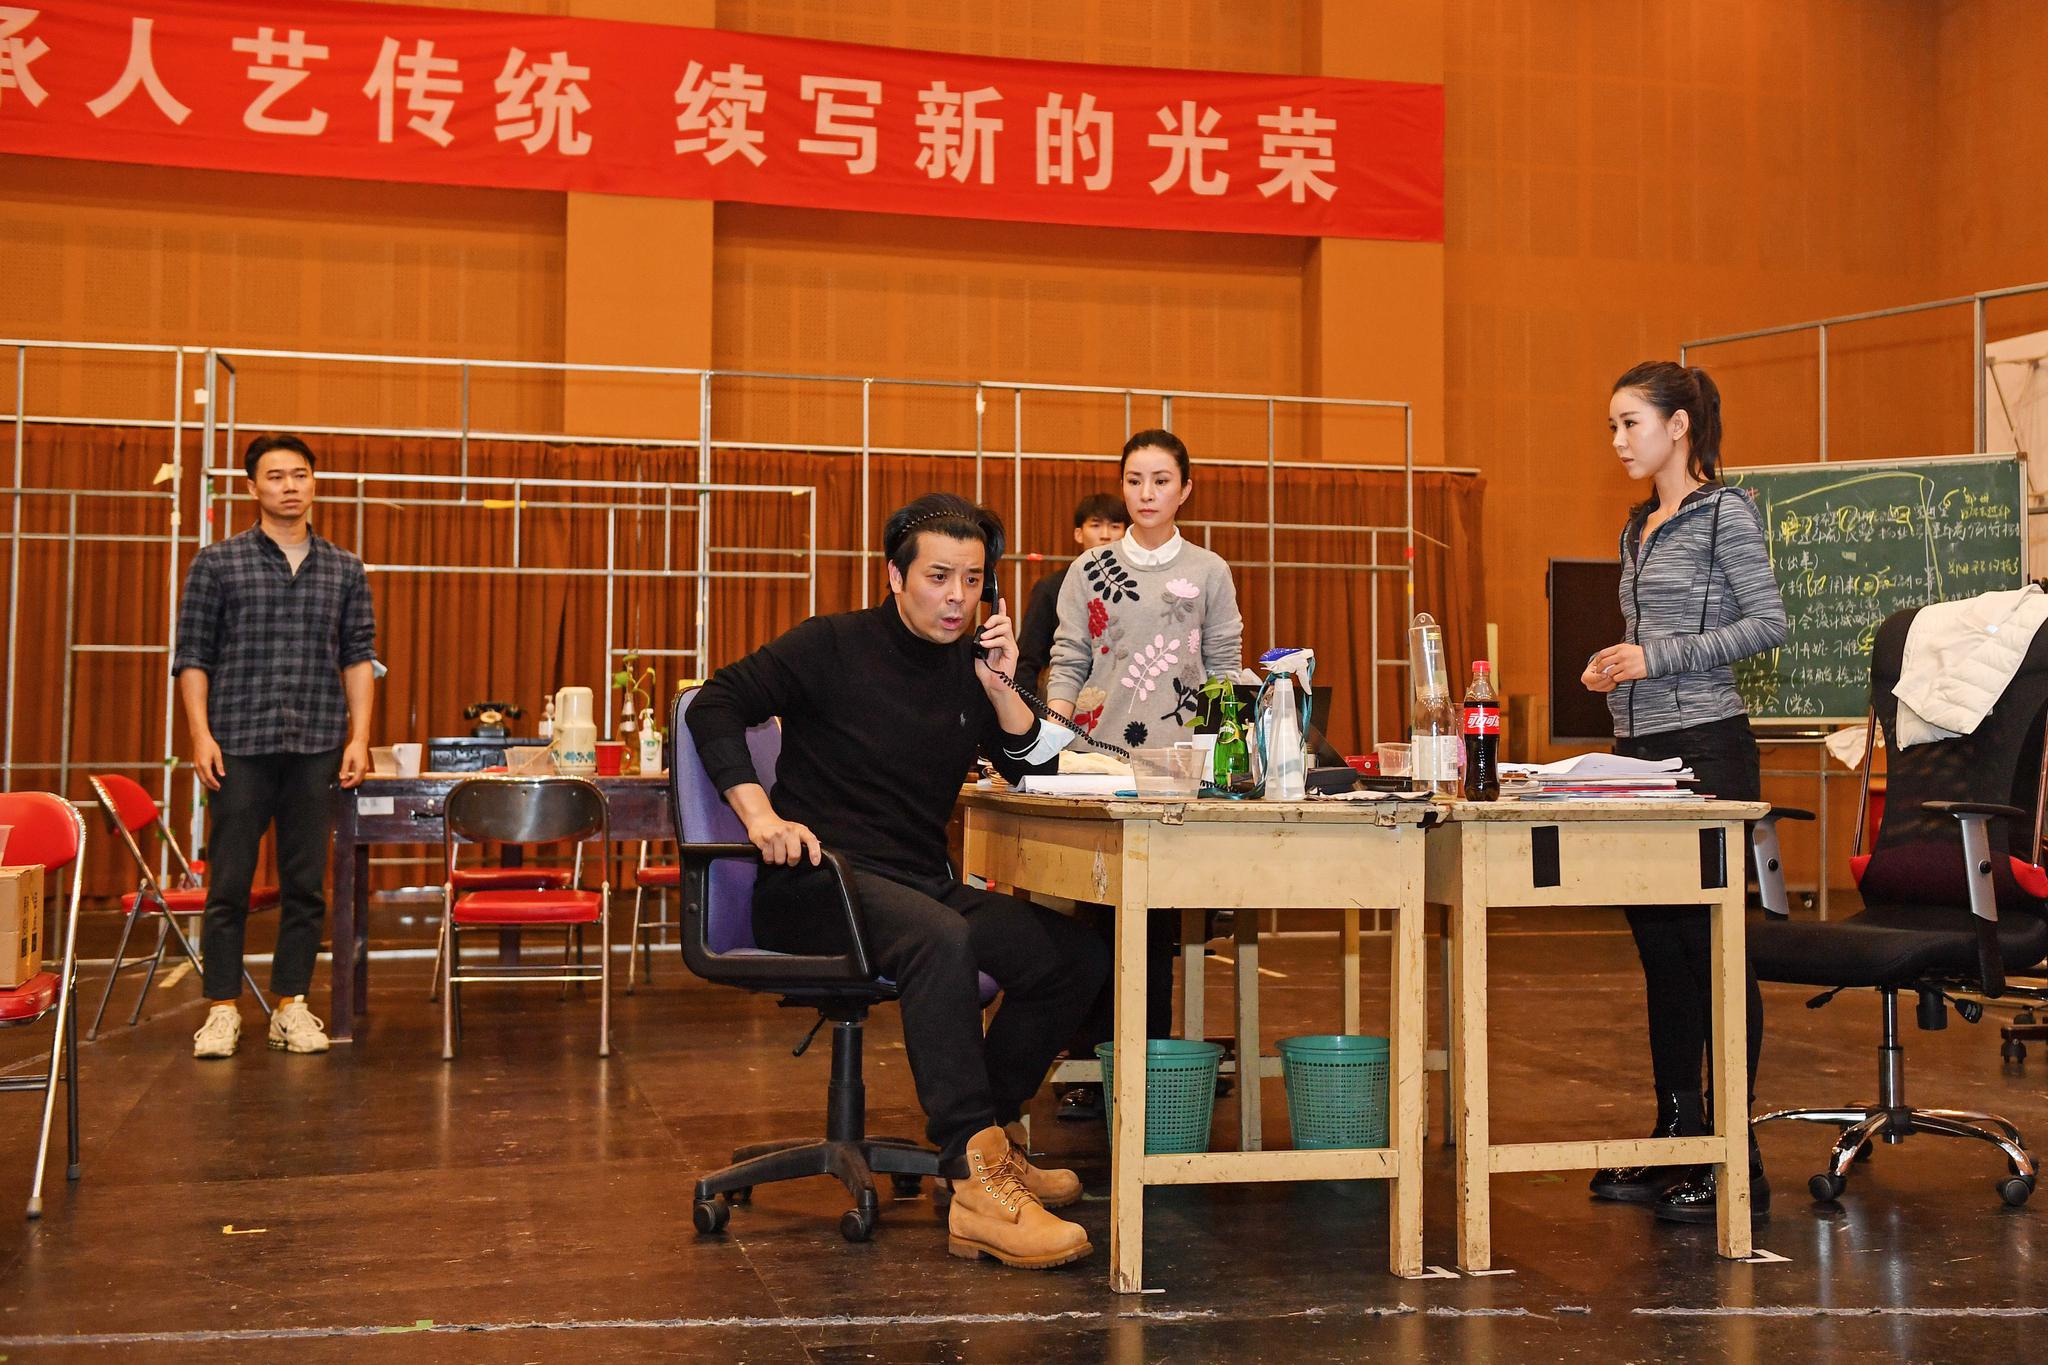 北京人艺的新戏《社区居委会》排练现场。摄影/李春光